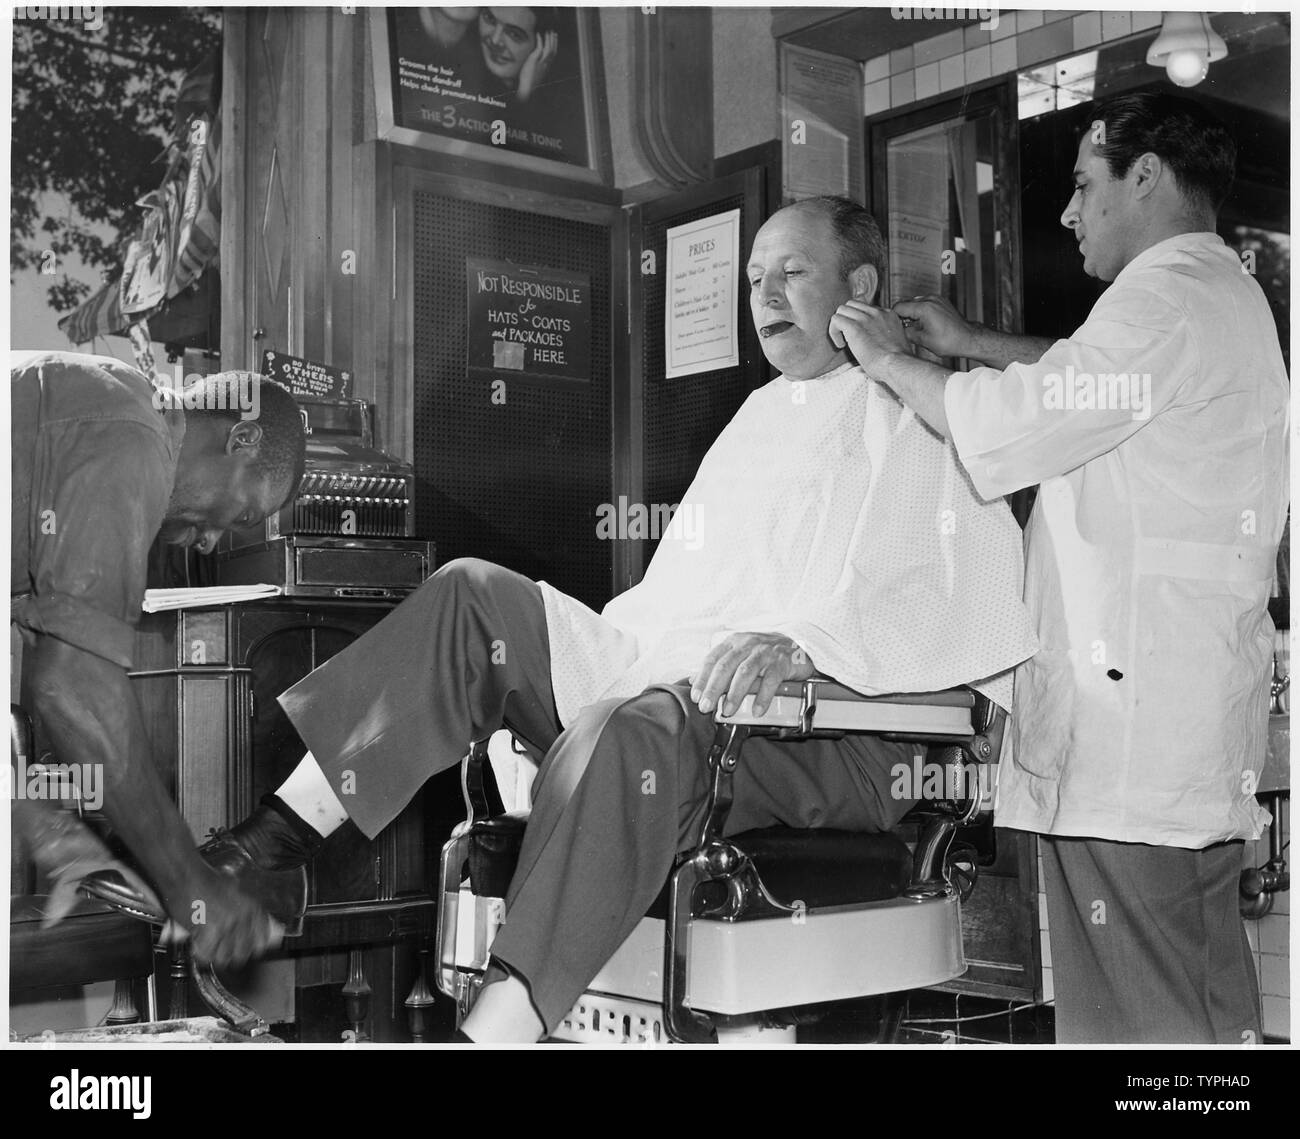 Quando Joe Smith va giù per il barbiere (dopo il 1 luglio) per un taglio di capelli, barba e lucentezza, solo il prezzo della lucentezza sarà controllata dalle OPS prezzo dell ordine di controllo. Foto Stock